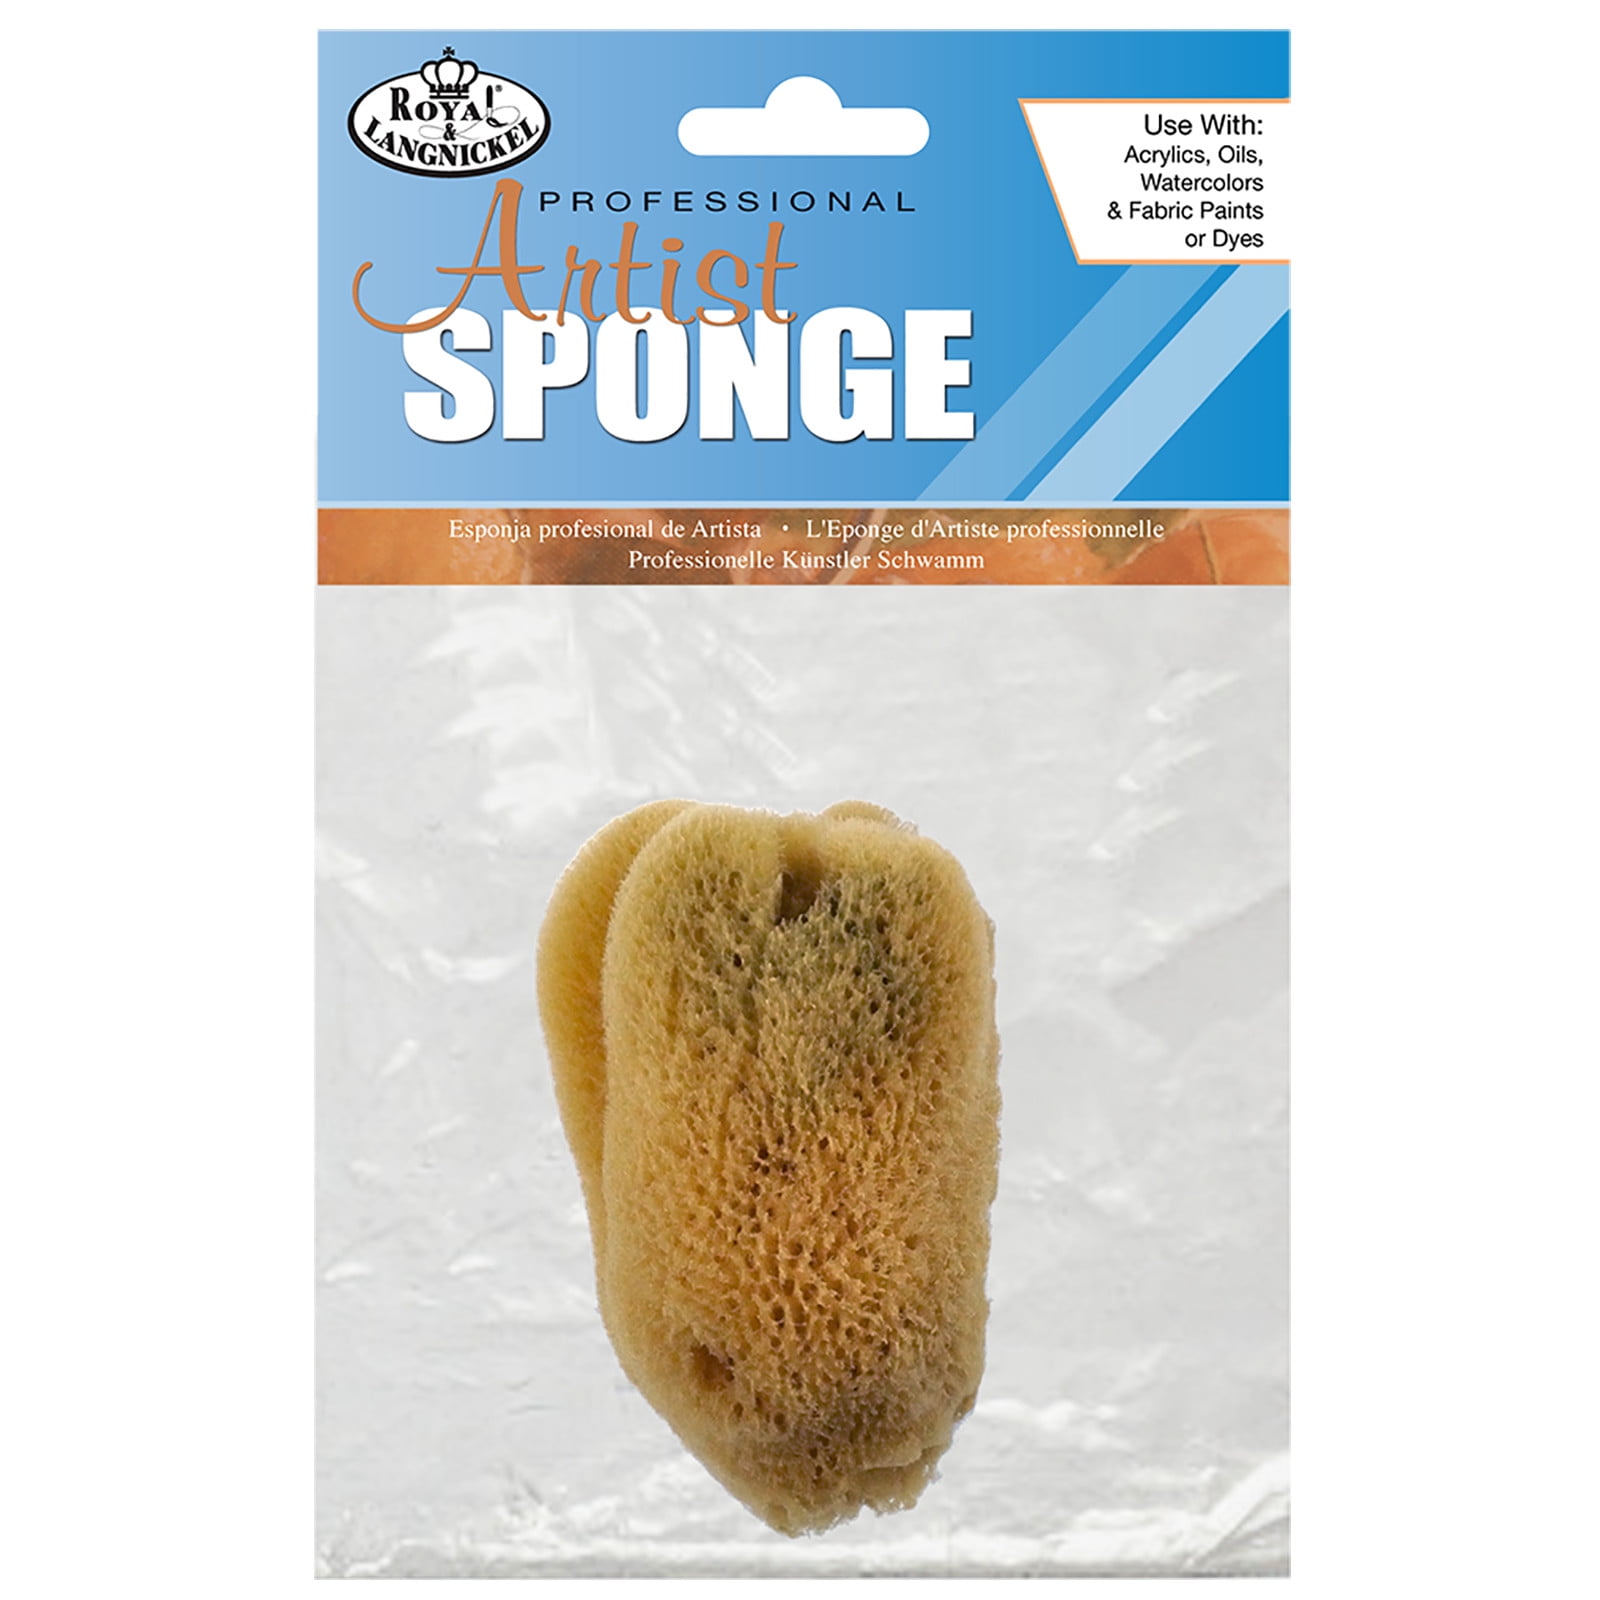 Silk Sponge Royal Brush Artist's Sponge 3-3-1/2